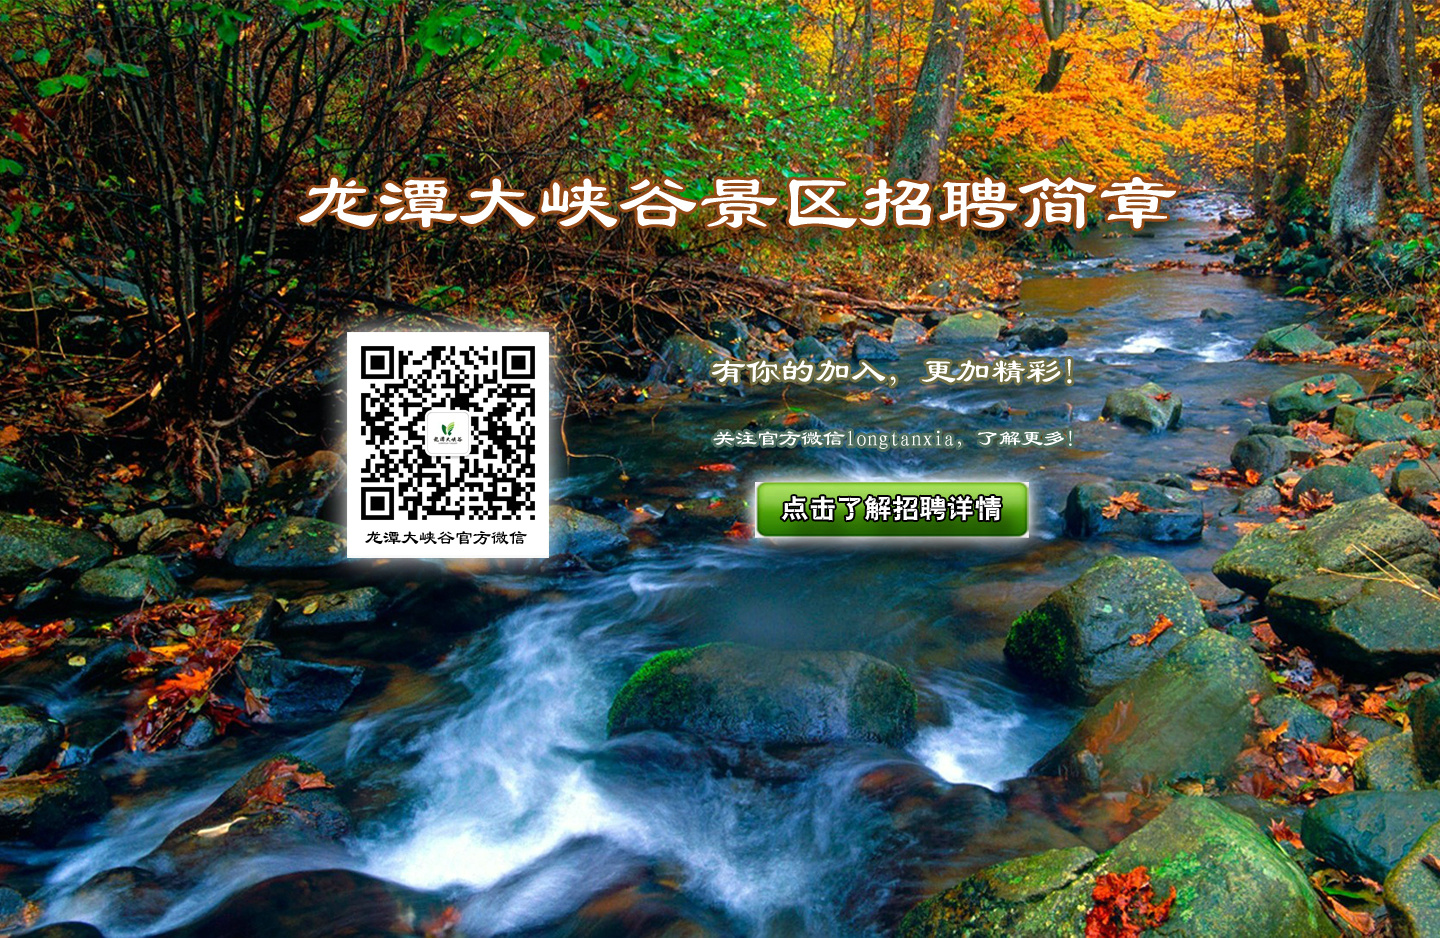 Luoyang Wanshan Lake Tourism Co. Ltd. job description